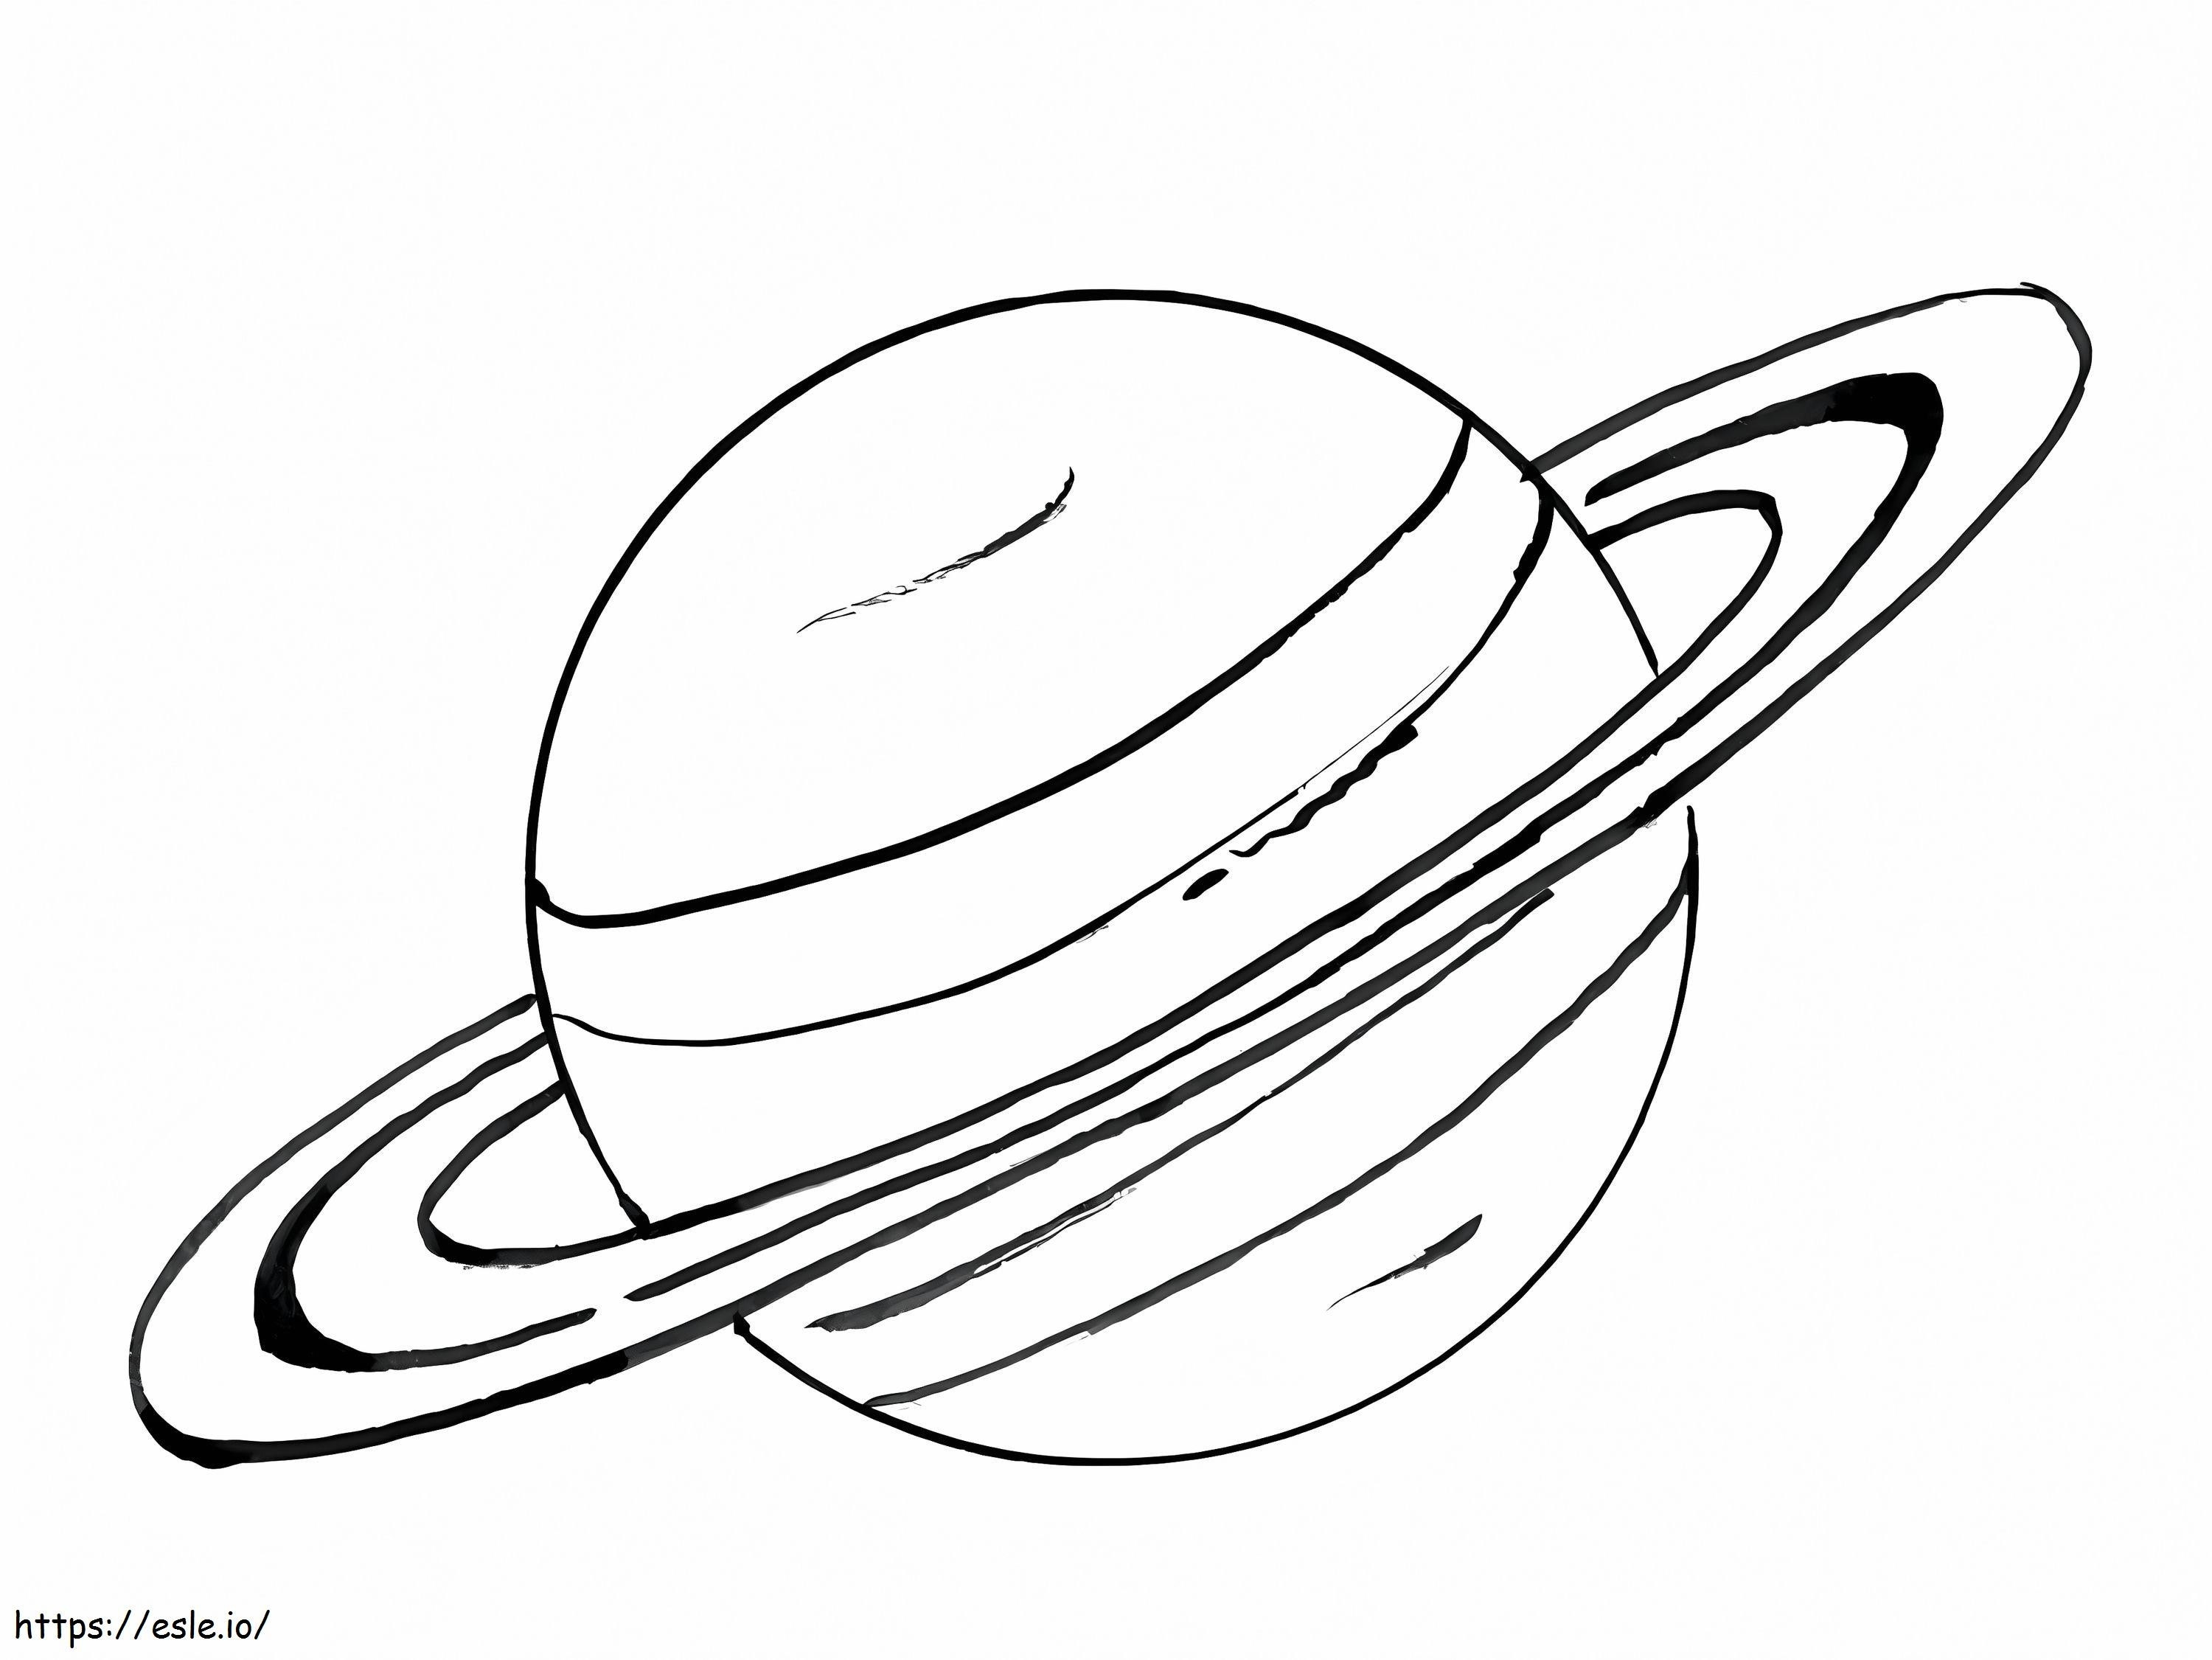 Saturno 2 para colorear